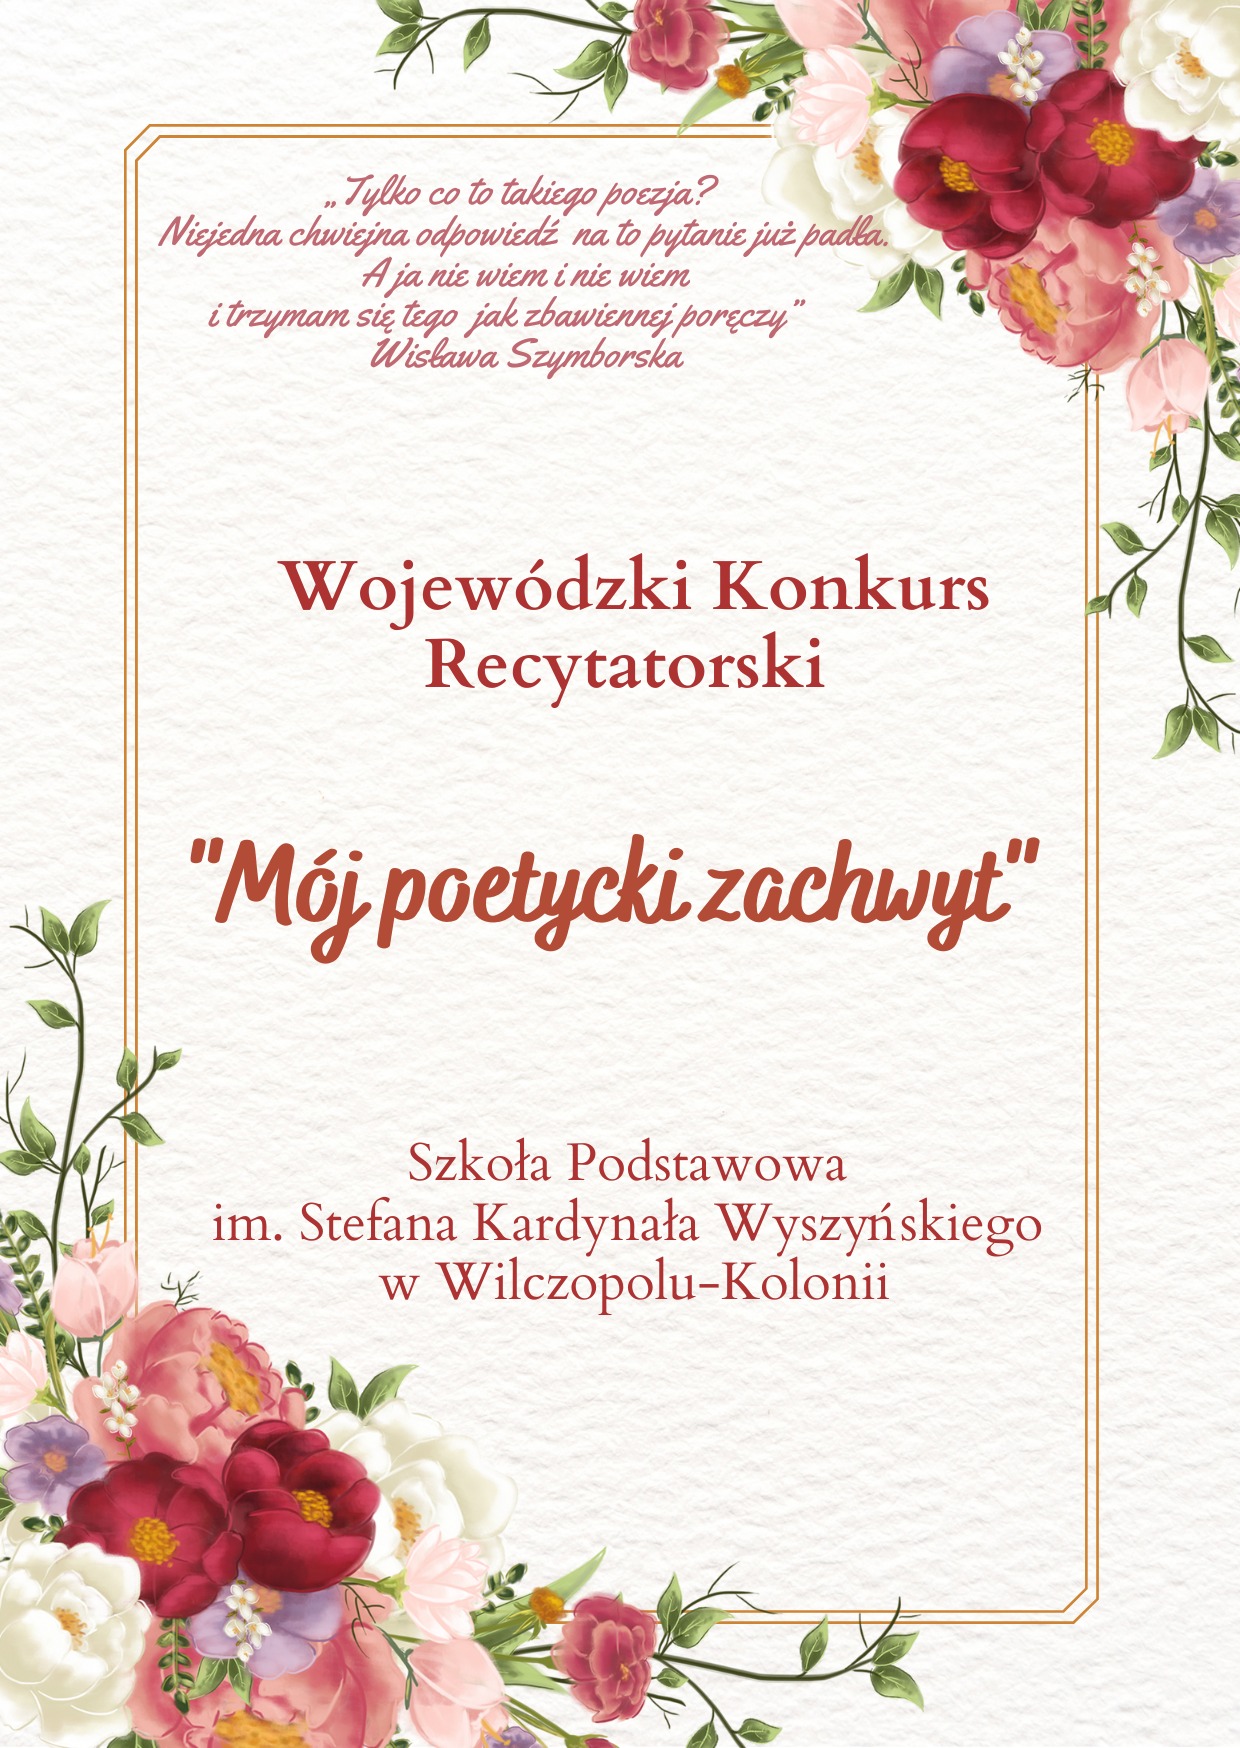 Wojewódzki Konkurs Recytatorski "Mój poetycki zachwyt" - Obrazek 1